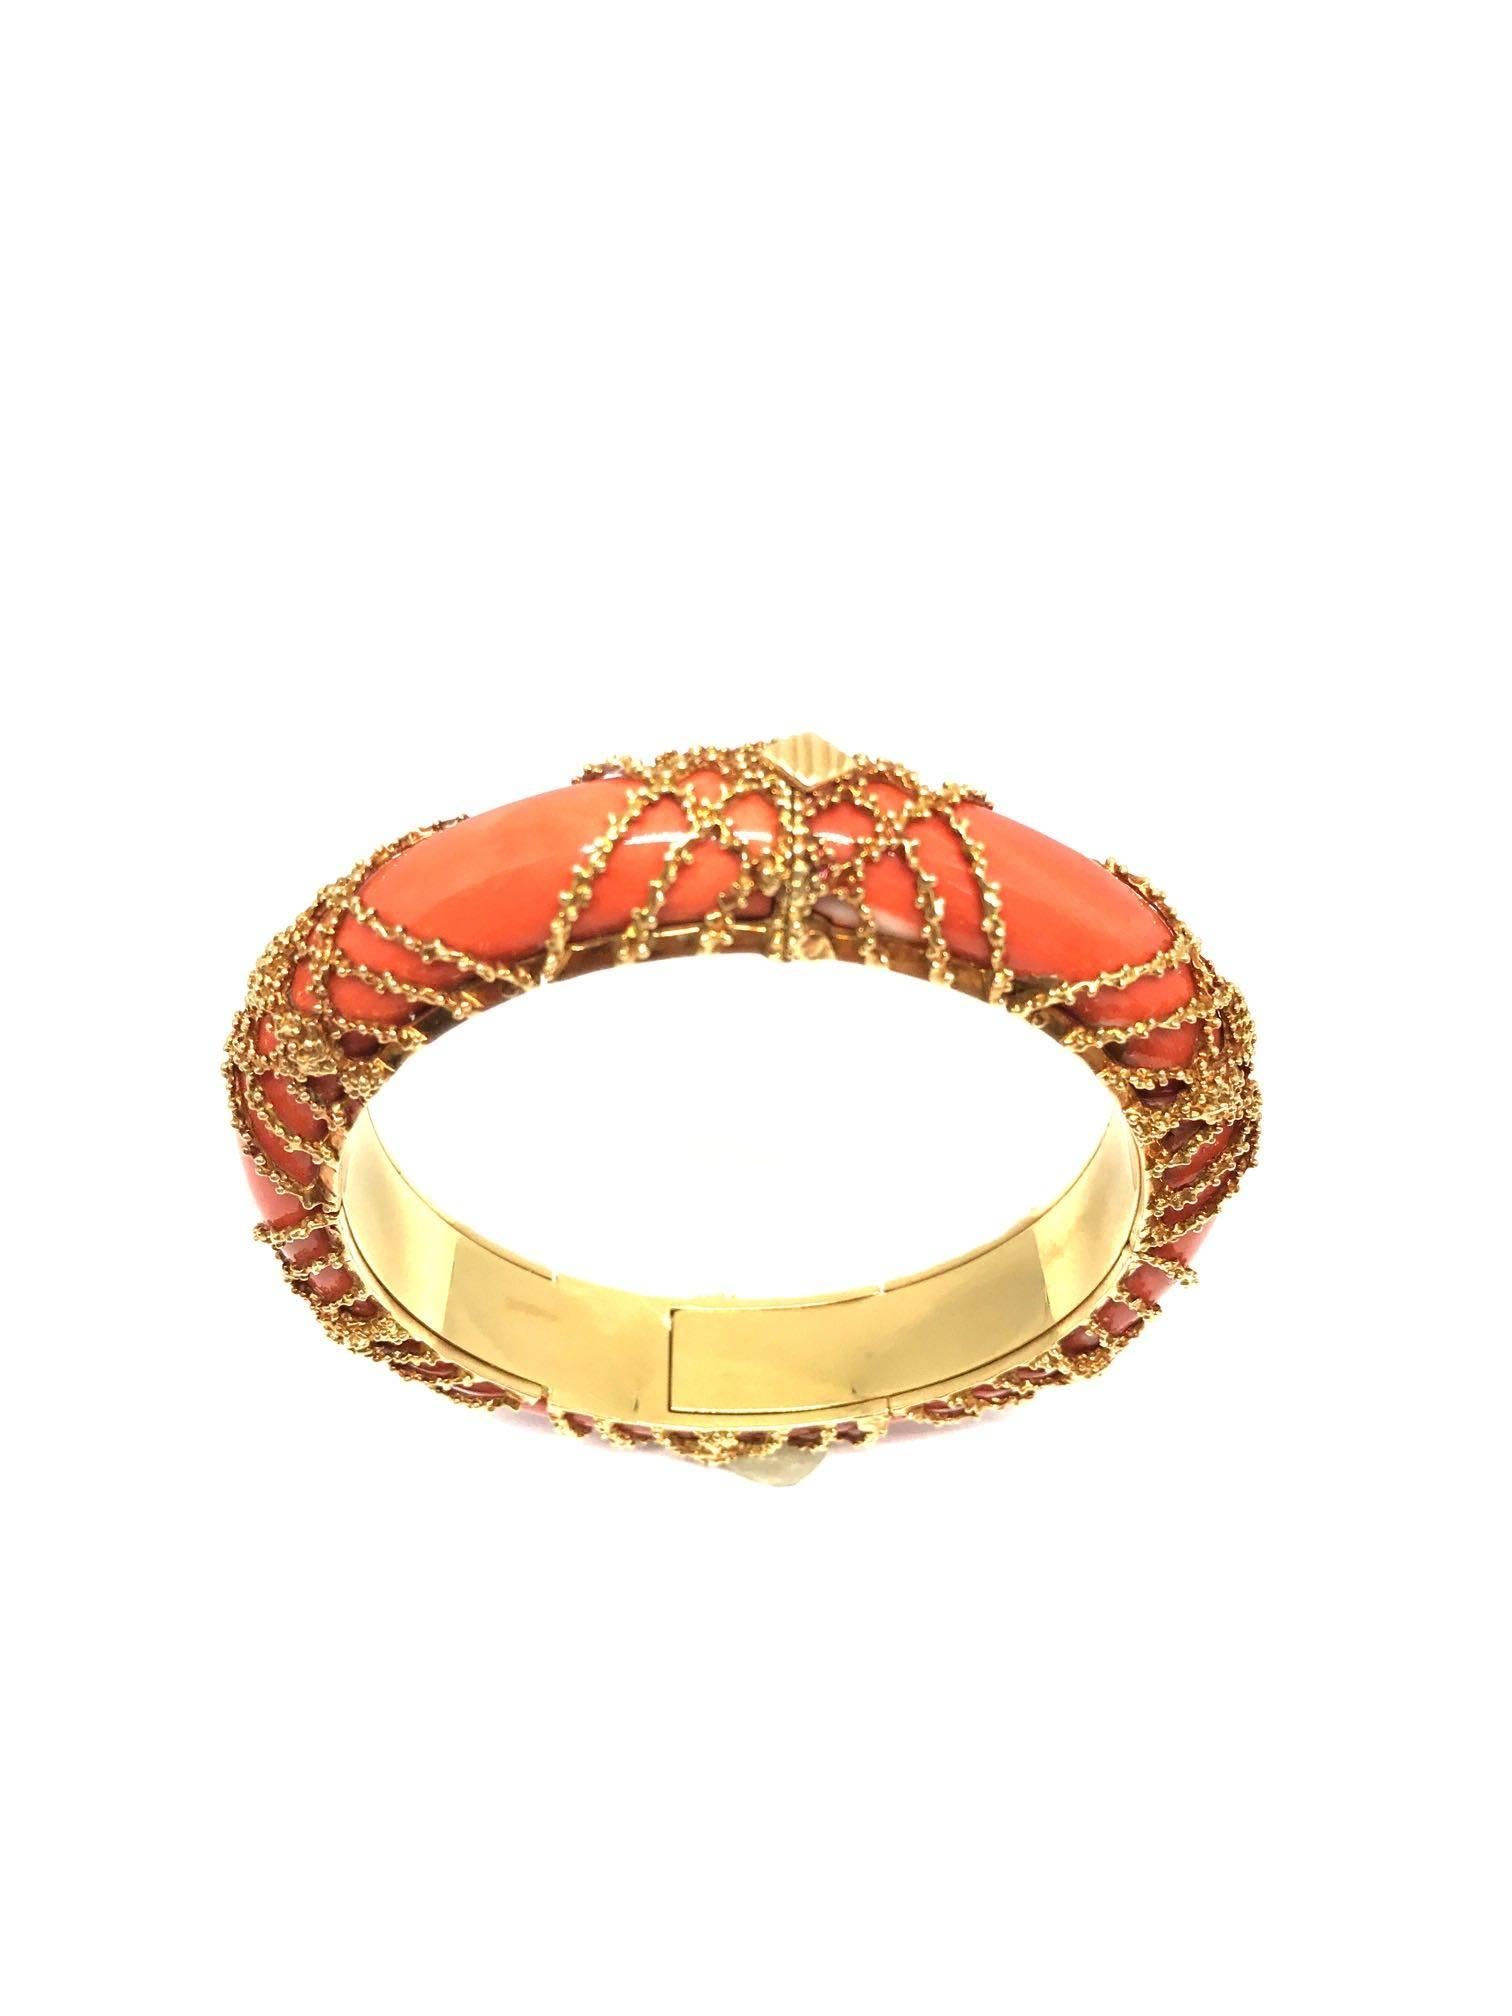 coral gold bangles